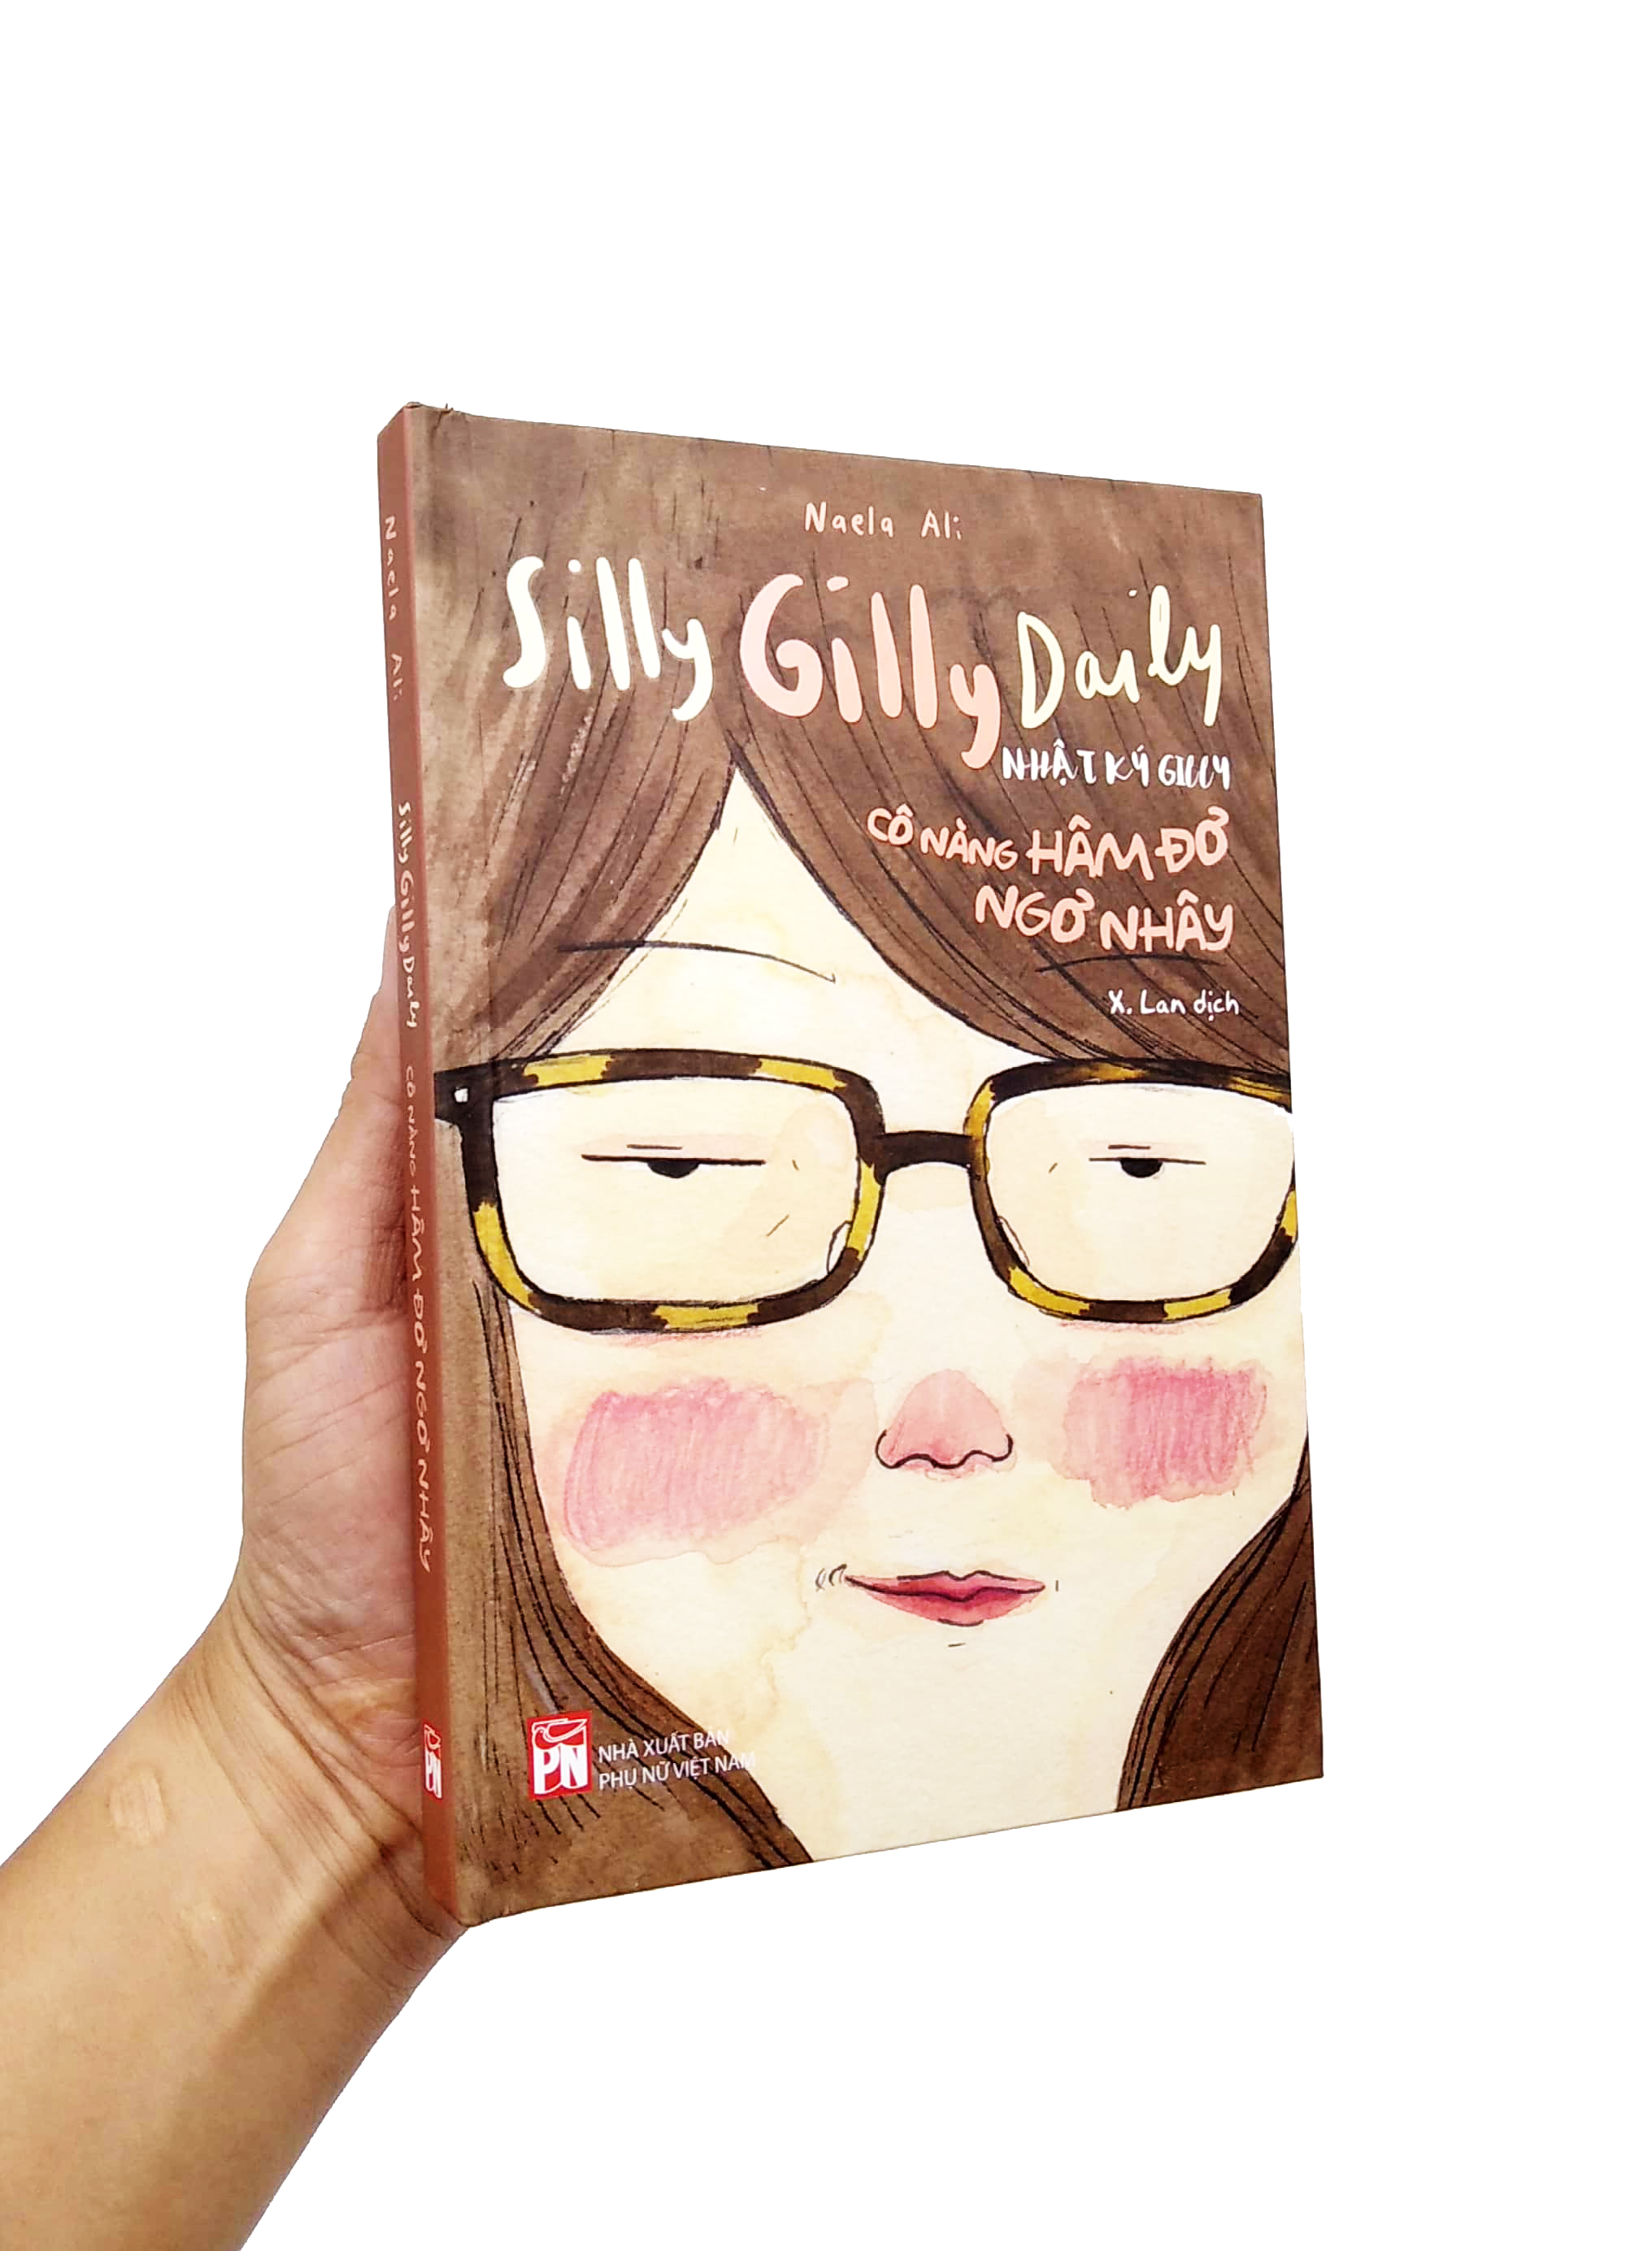 Silly Gilly Daily - Nhật Ký Gilly Cô Nàng Hâm Đơ, Ngơ Nhây PDF